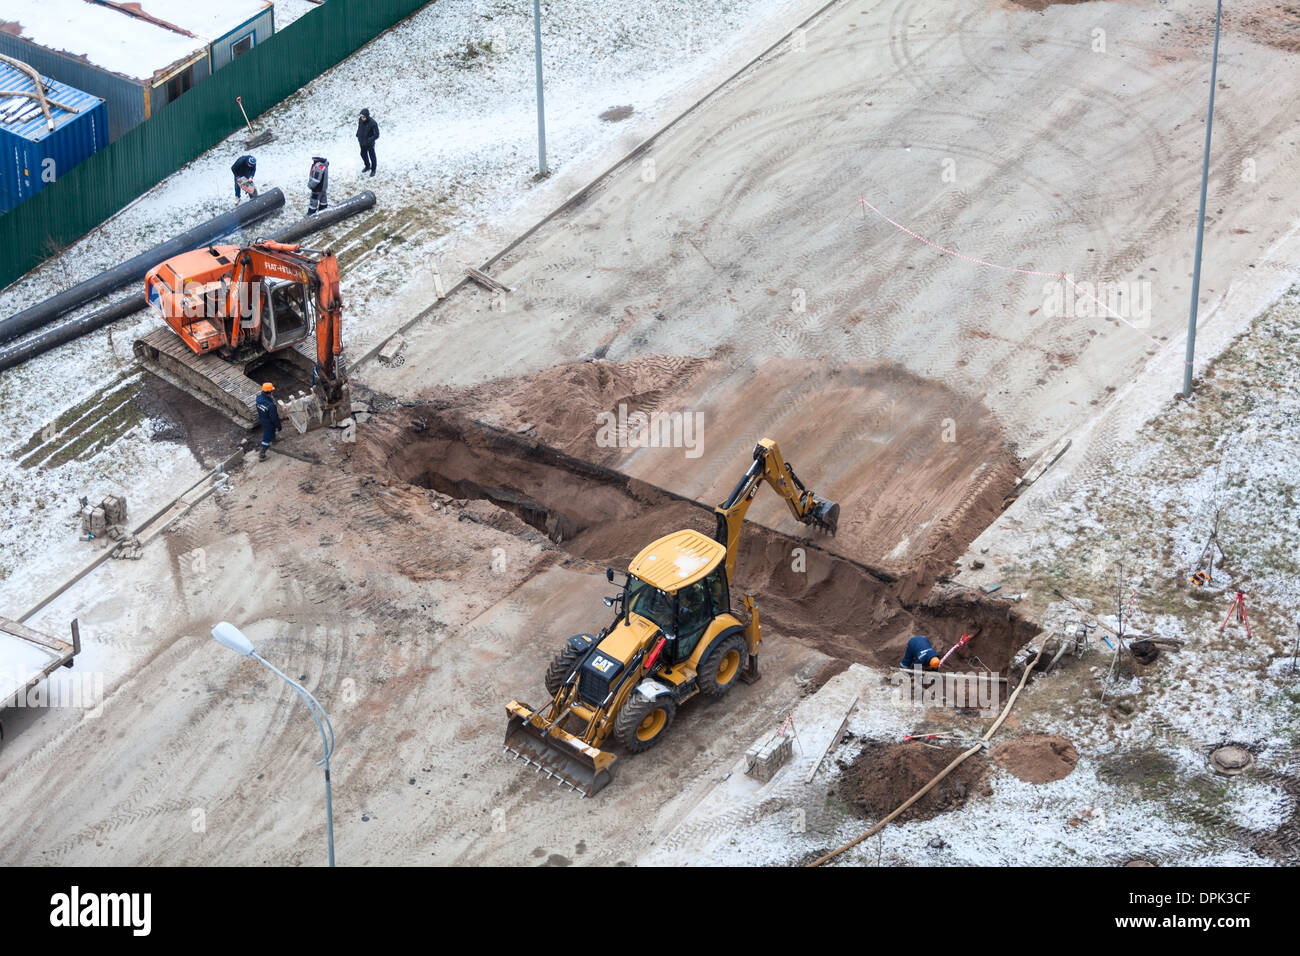 Arbeiten Sie mit der Überarbeitung der Heizung auf der anderen Straßenseite. Auffüllen der Gräben mit Sand von Traktor. Russland Stockfoto